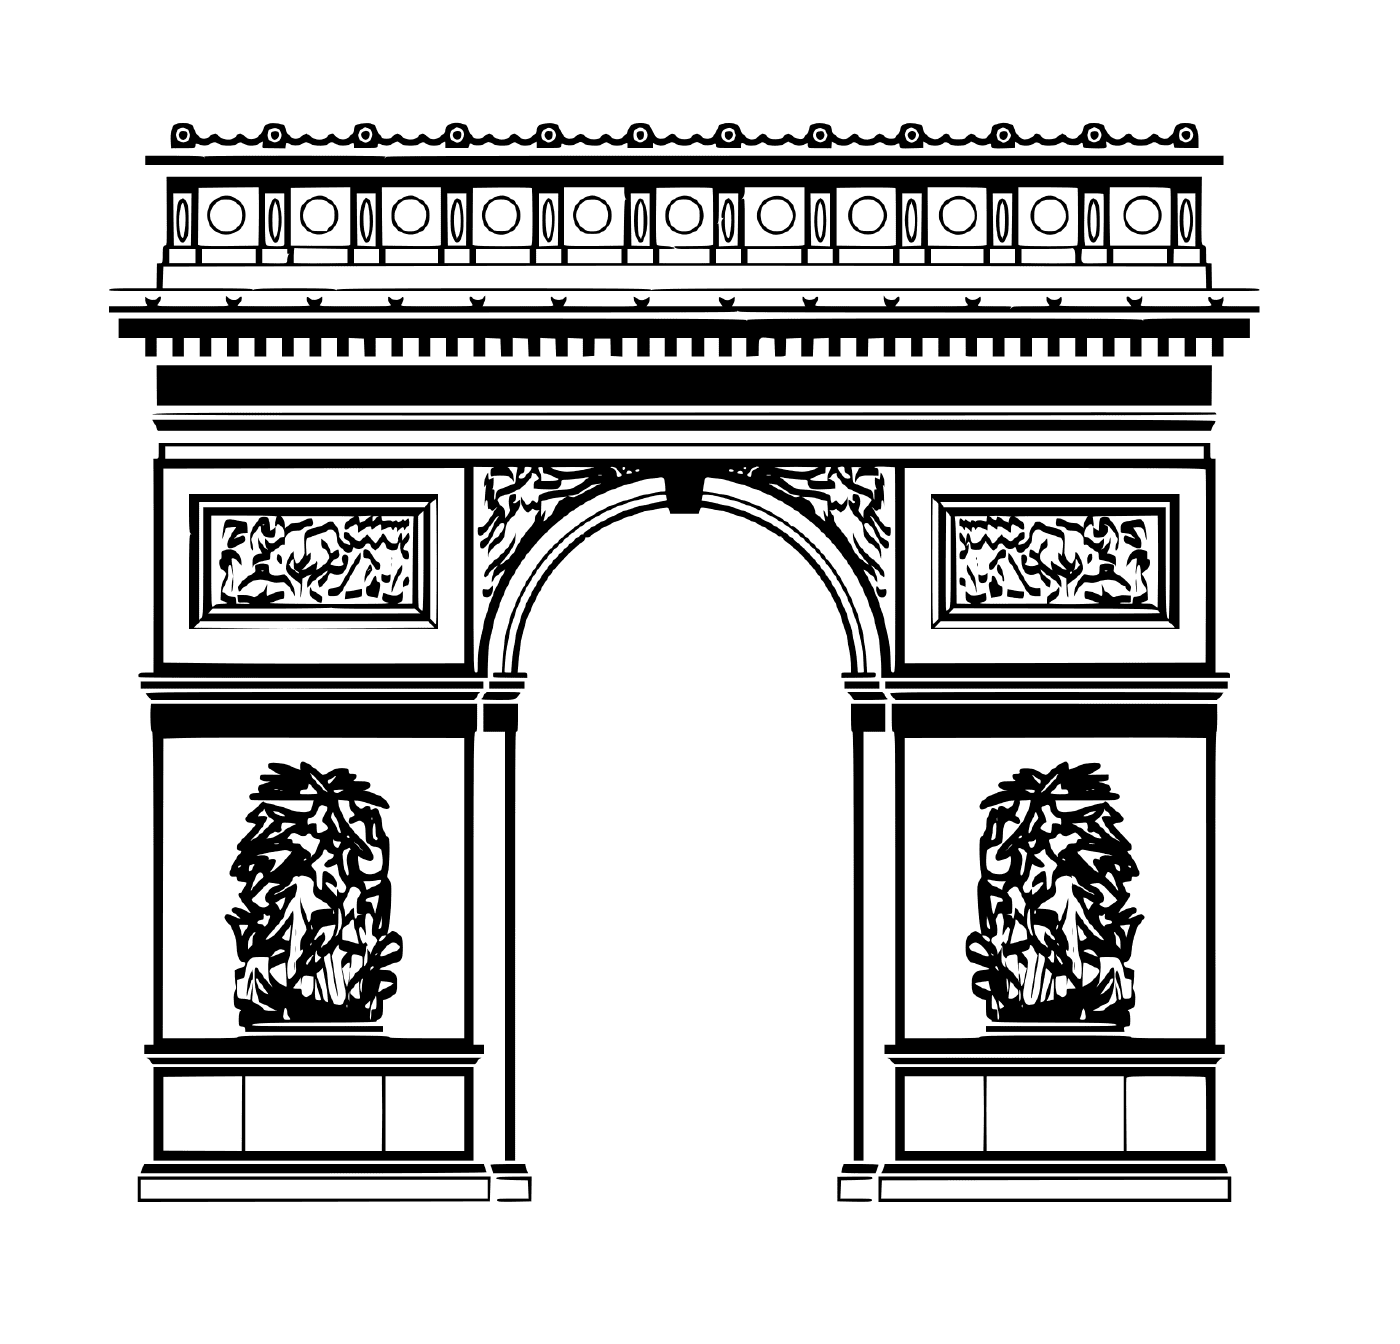  Città di Parigi Arco di Trionfo 